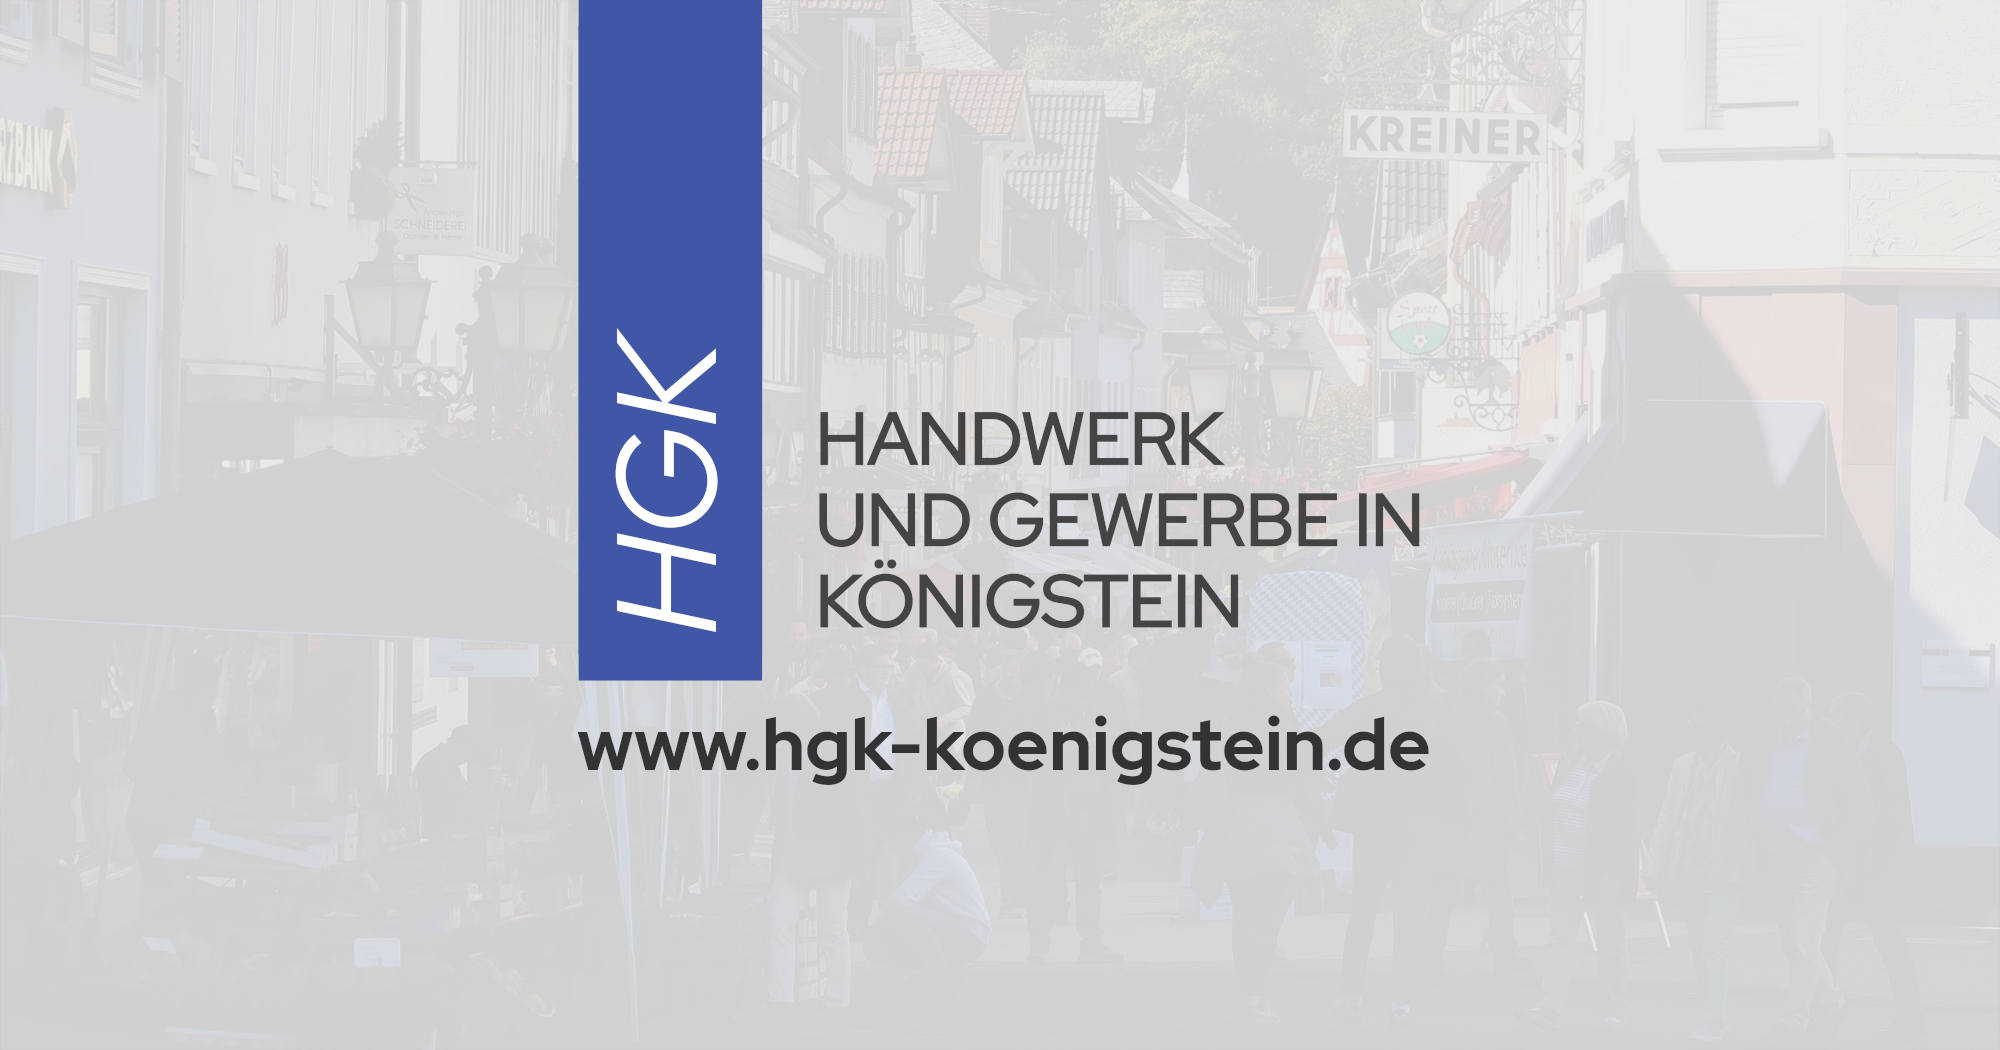 OpenGraph: Facebook » Handwerk und Gewerbe in Königstein :: HGK » Handel in der Kurstadt